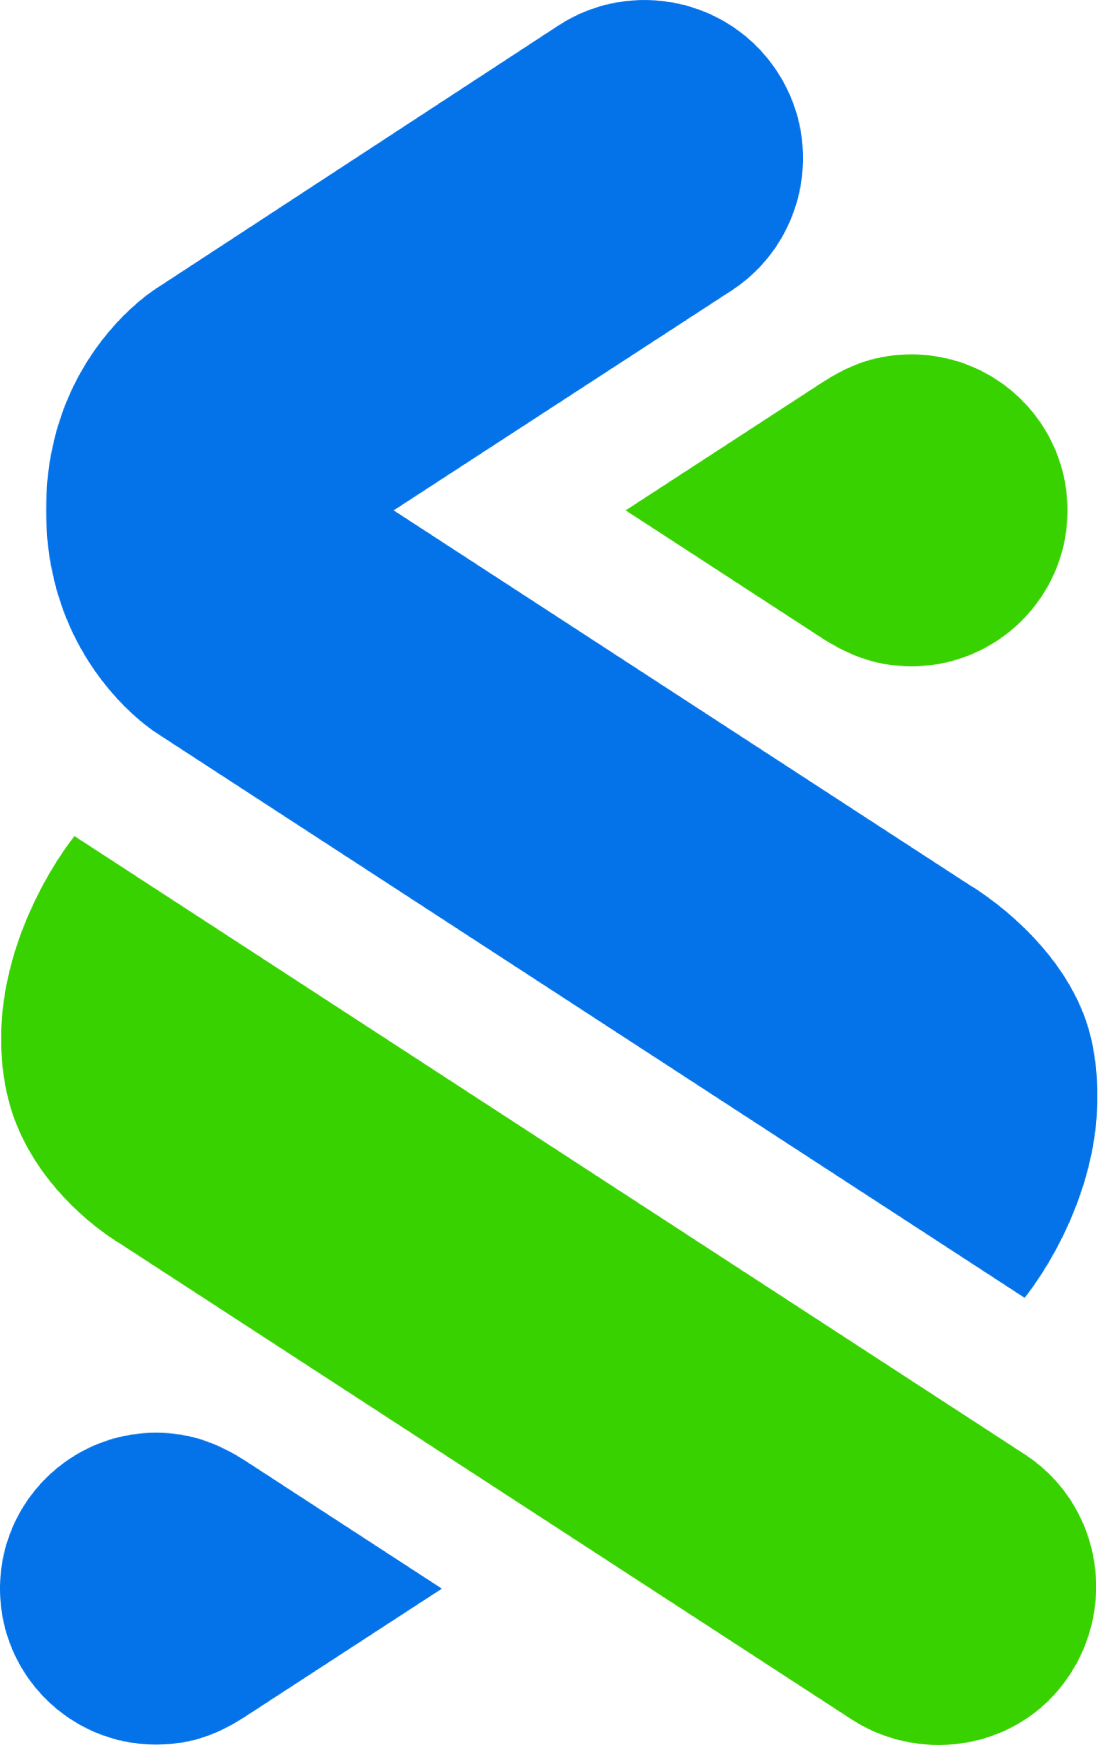 Standard Chartered Logo Transparent Png Stickpng - vrogue.co